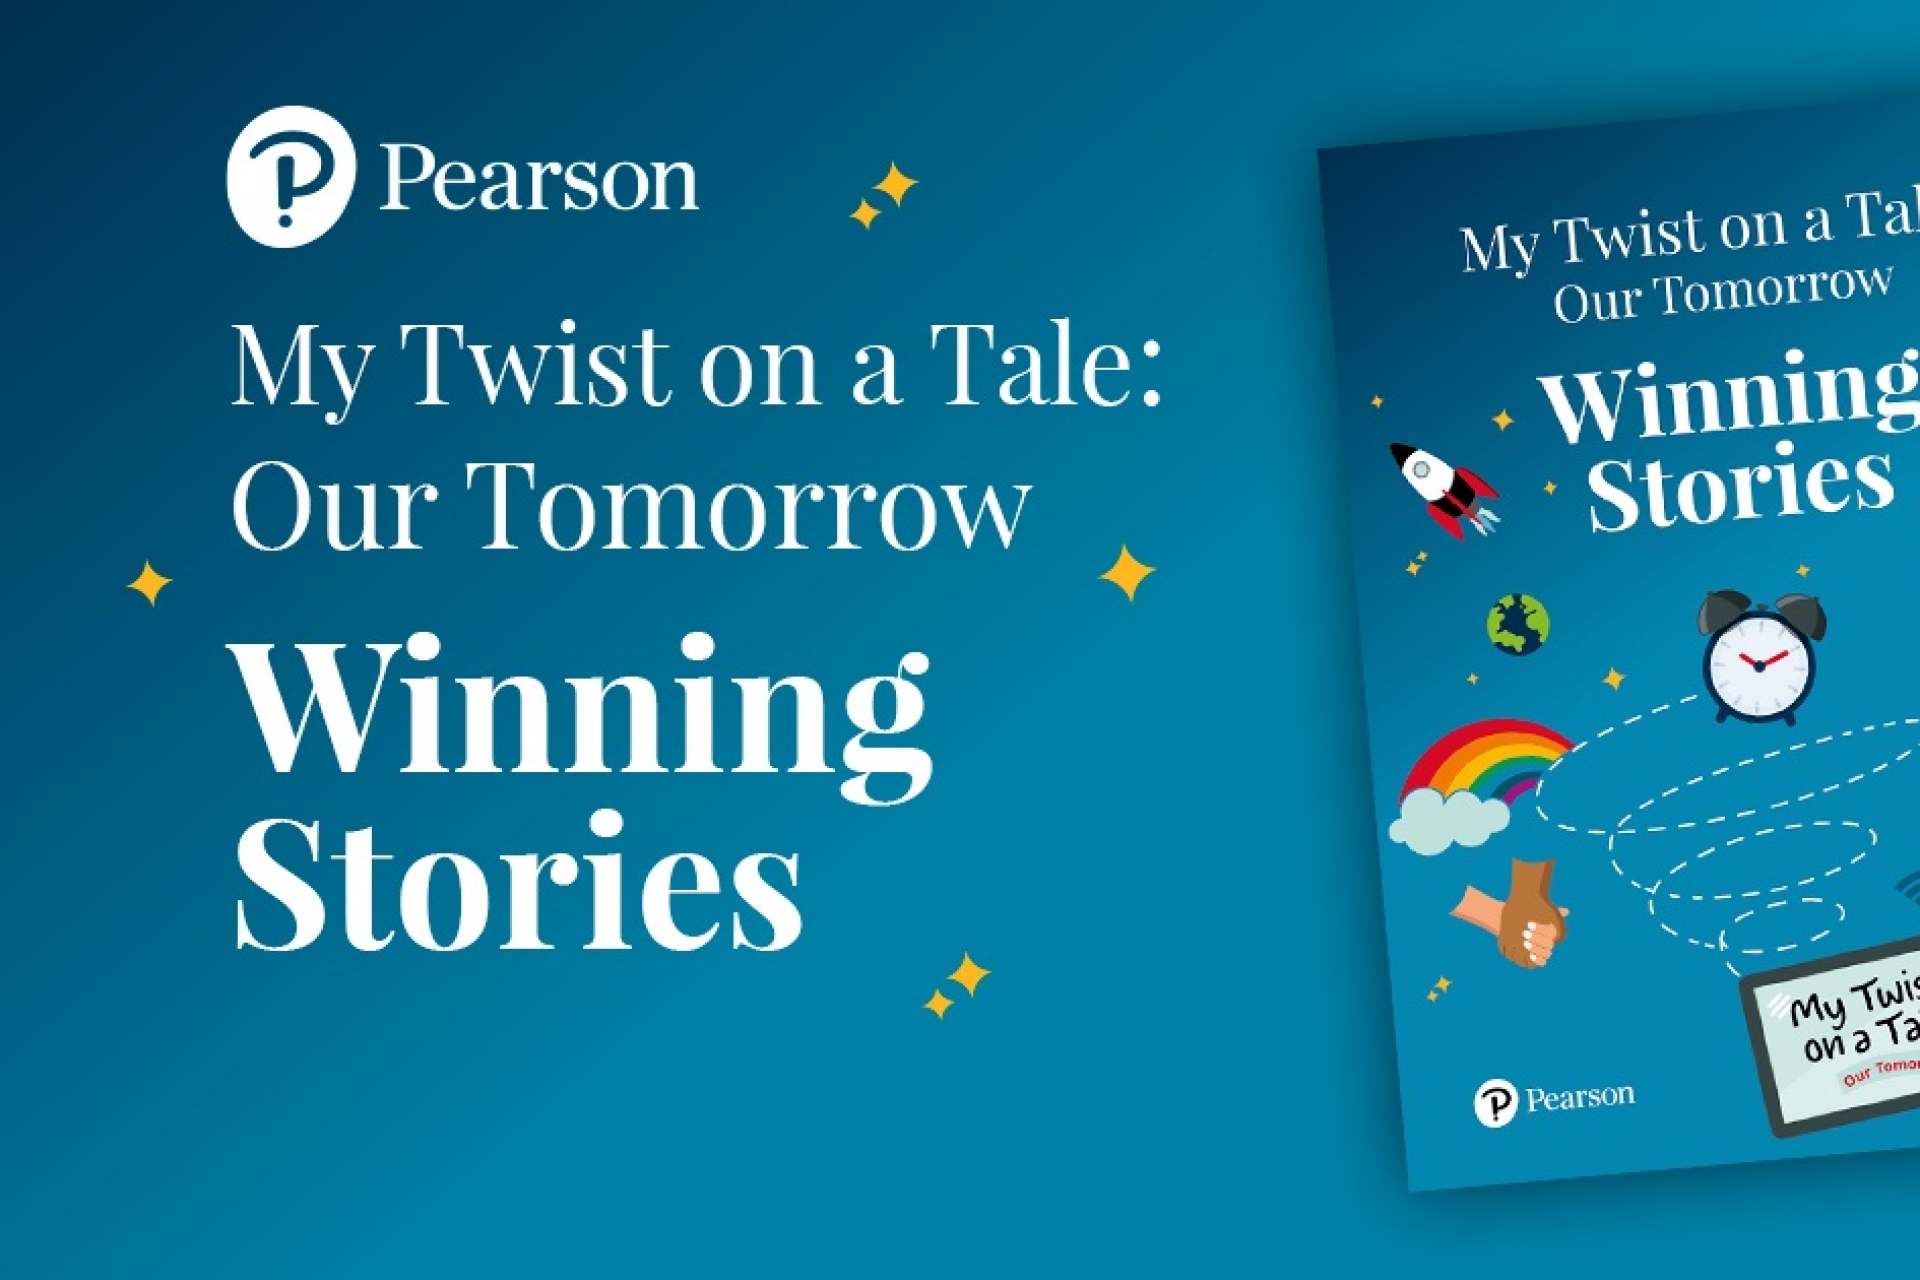 Pearson My Twist on a Tale winners announced!